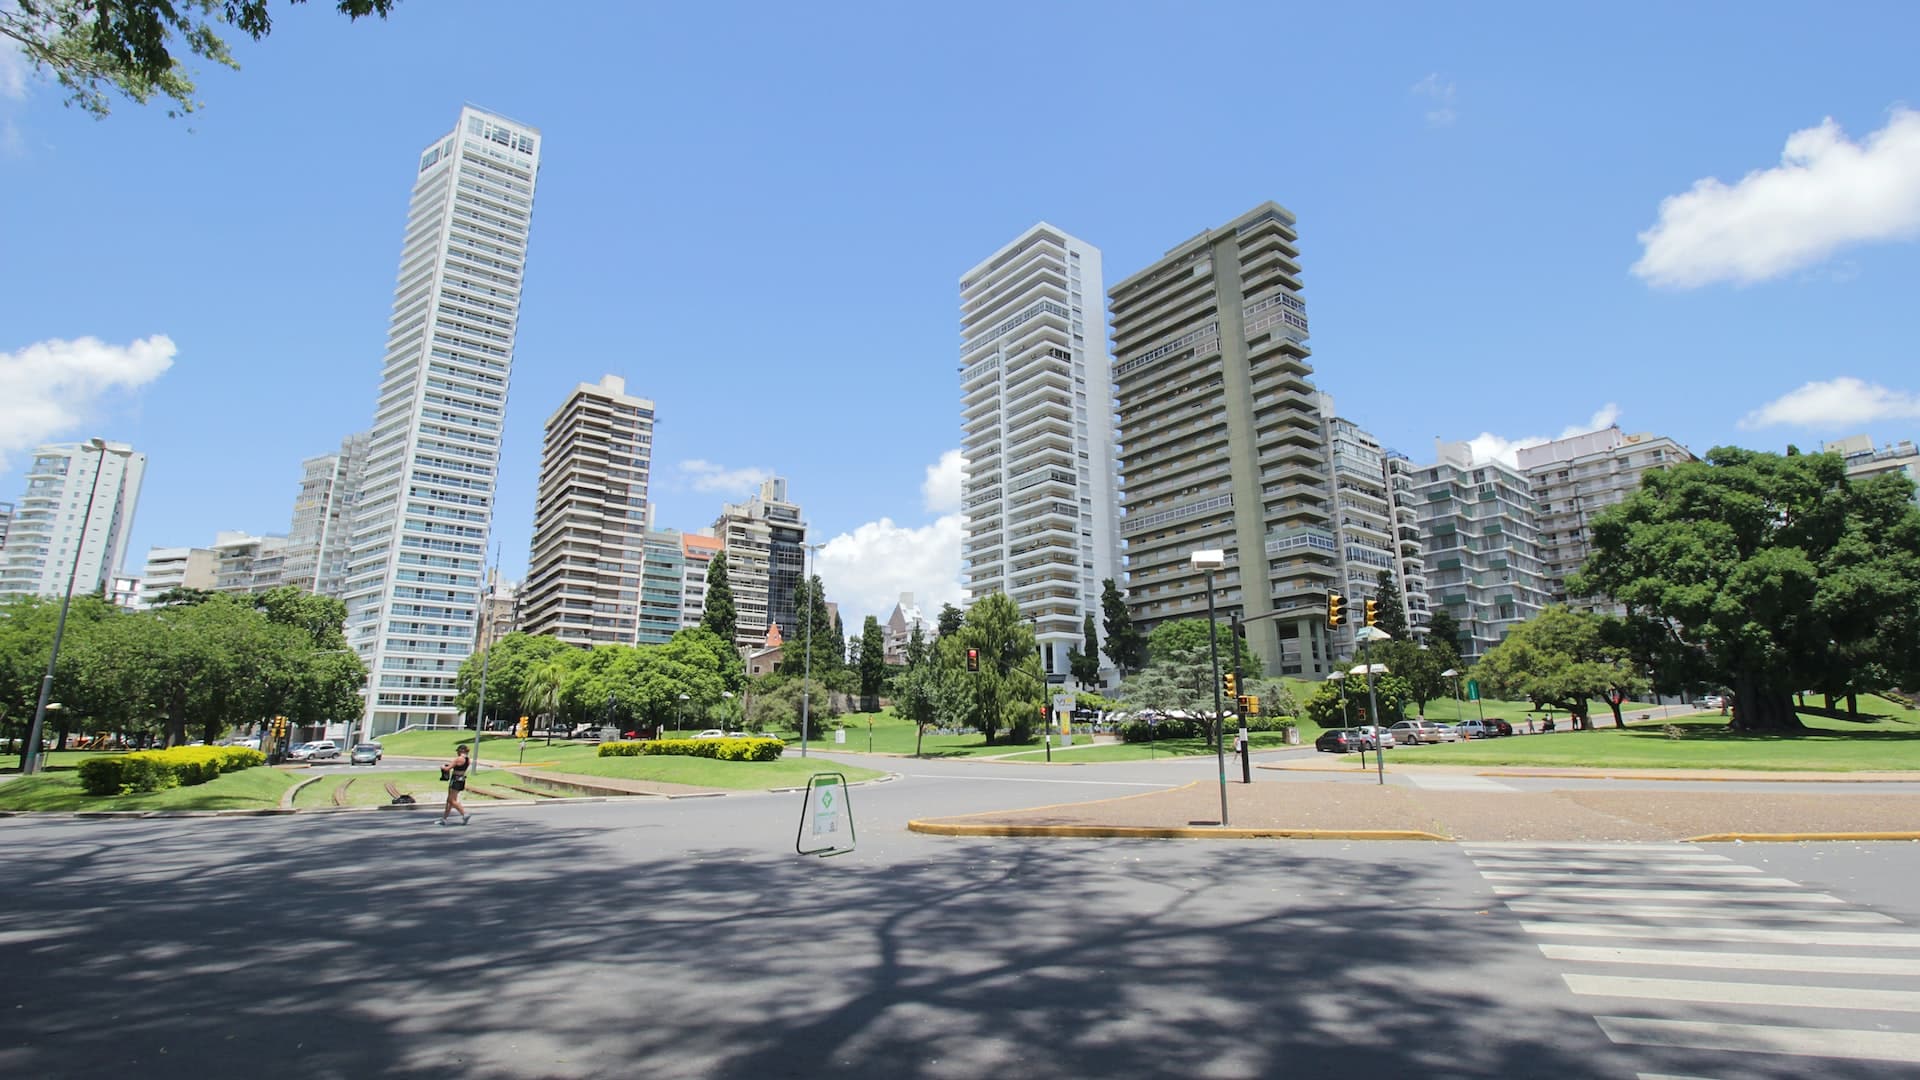 La Zona Norte de Rosario es una de las zonas más elegantes y modernas de la ciudad